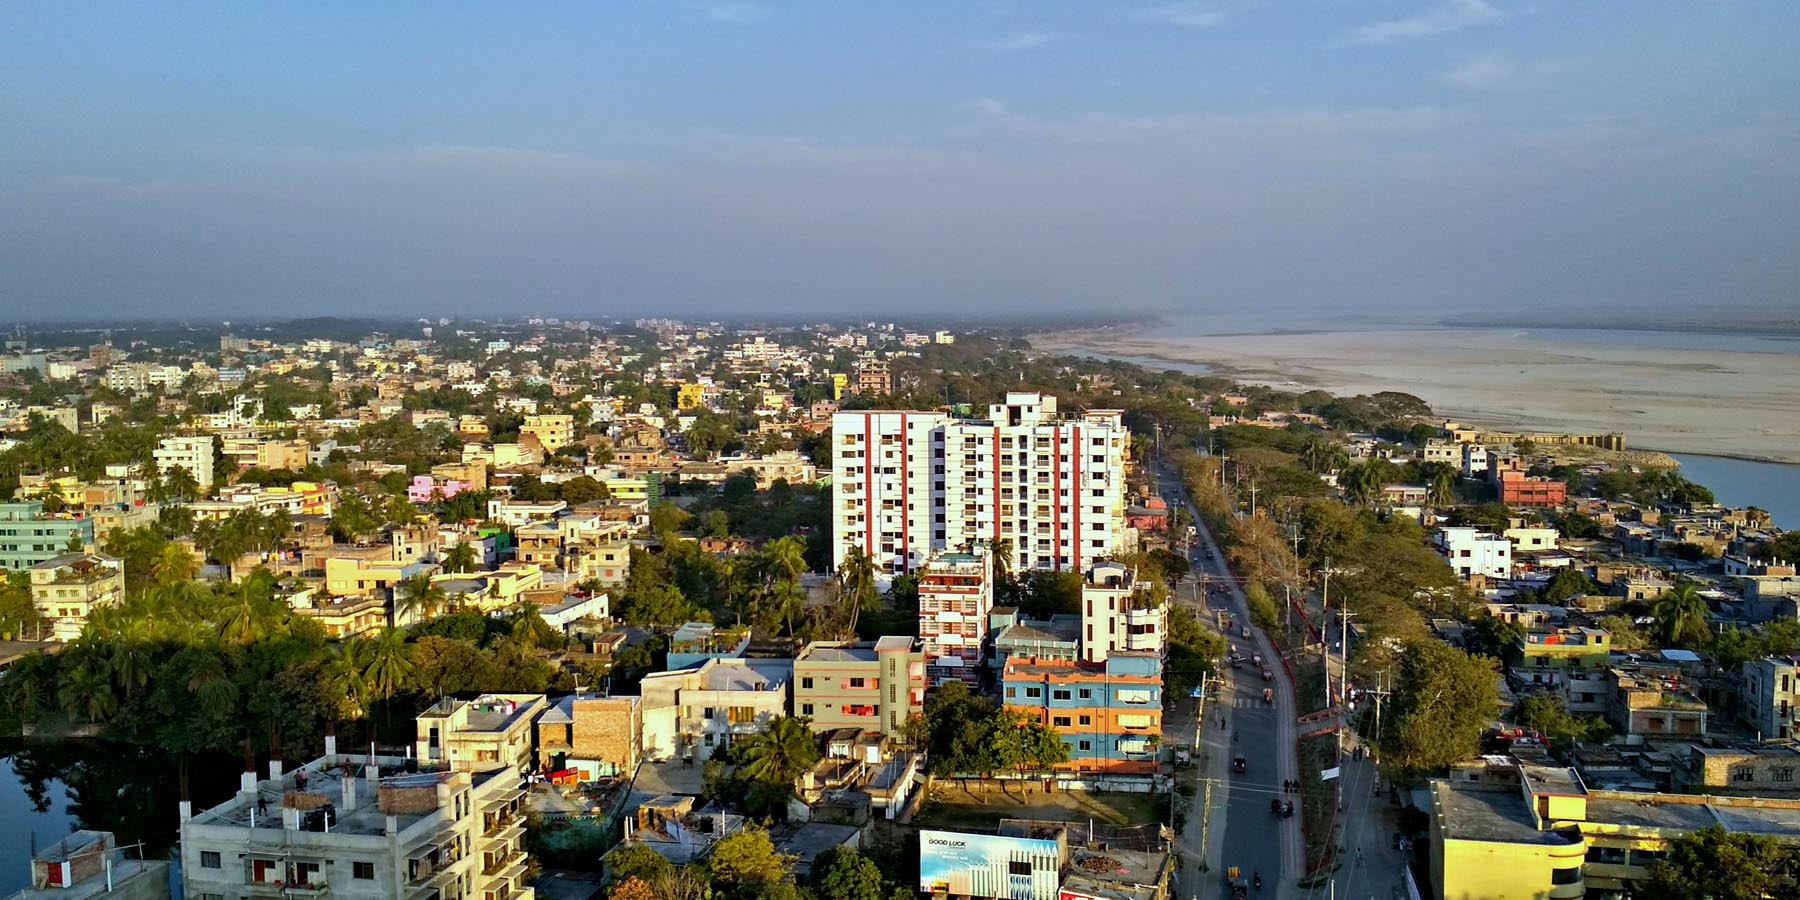 Rajshai city, Bangladesh